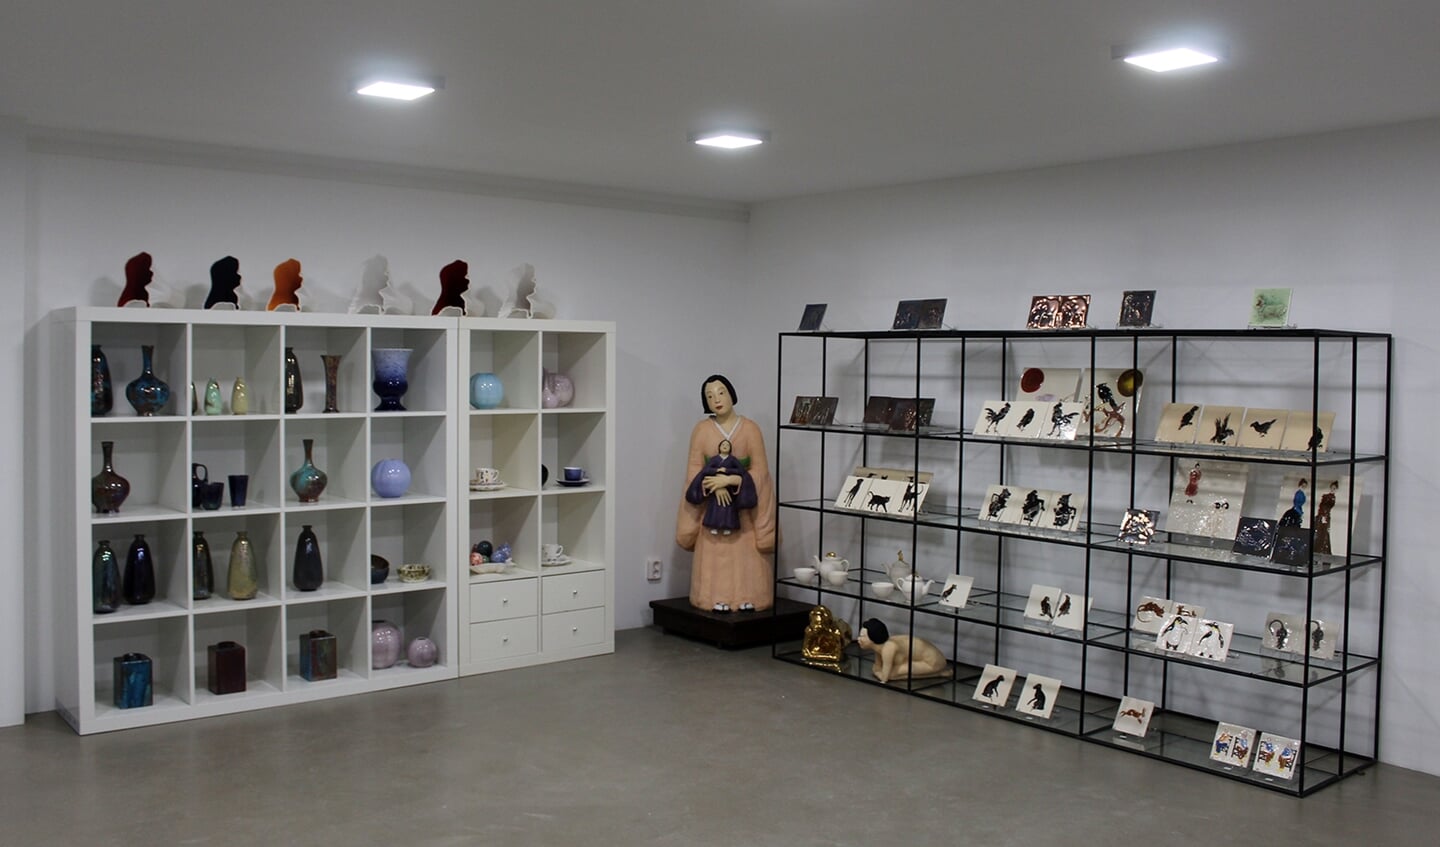 De galerie in Nieuw-Buinen is uitgebreid in verband met het verwerven van nieuwe collecties.